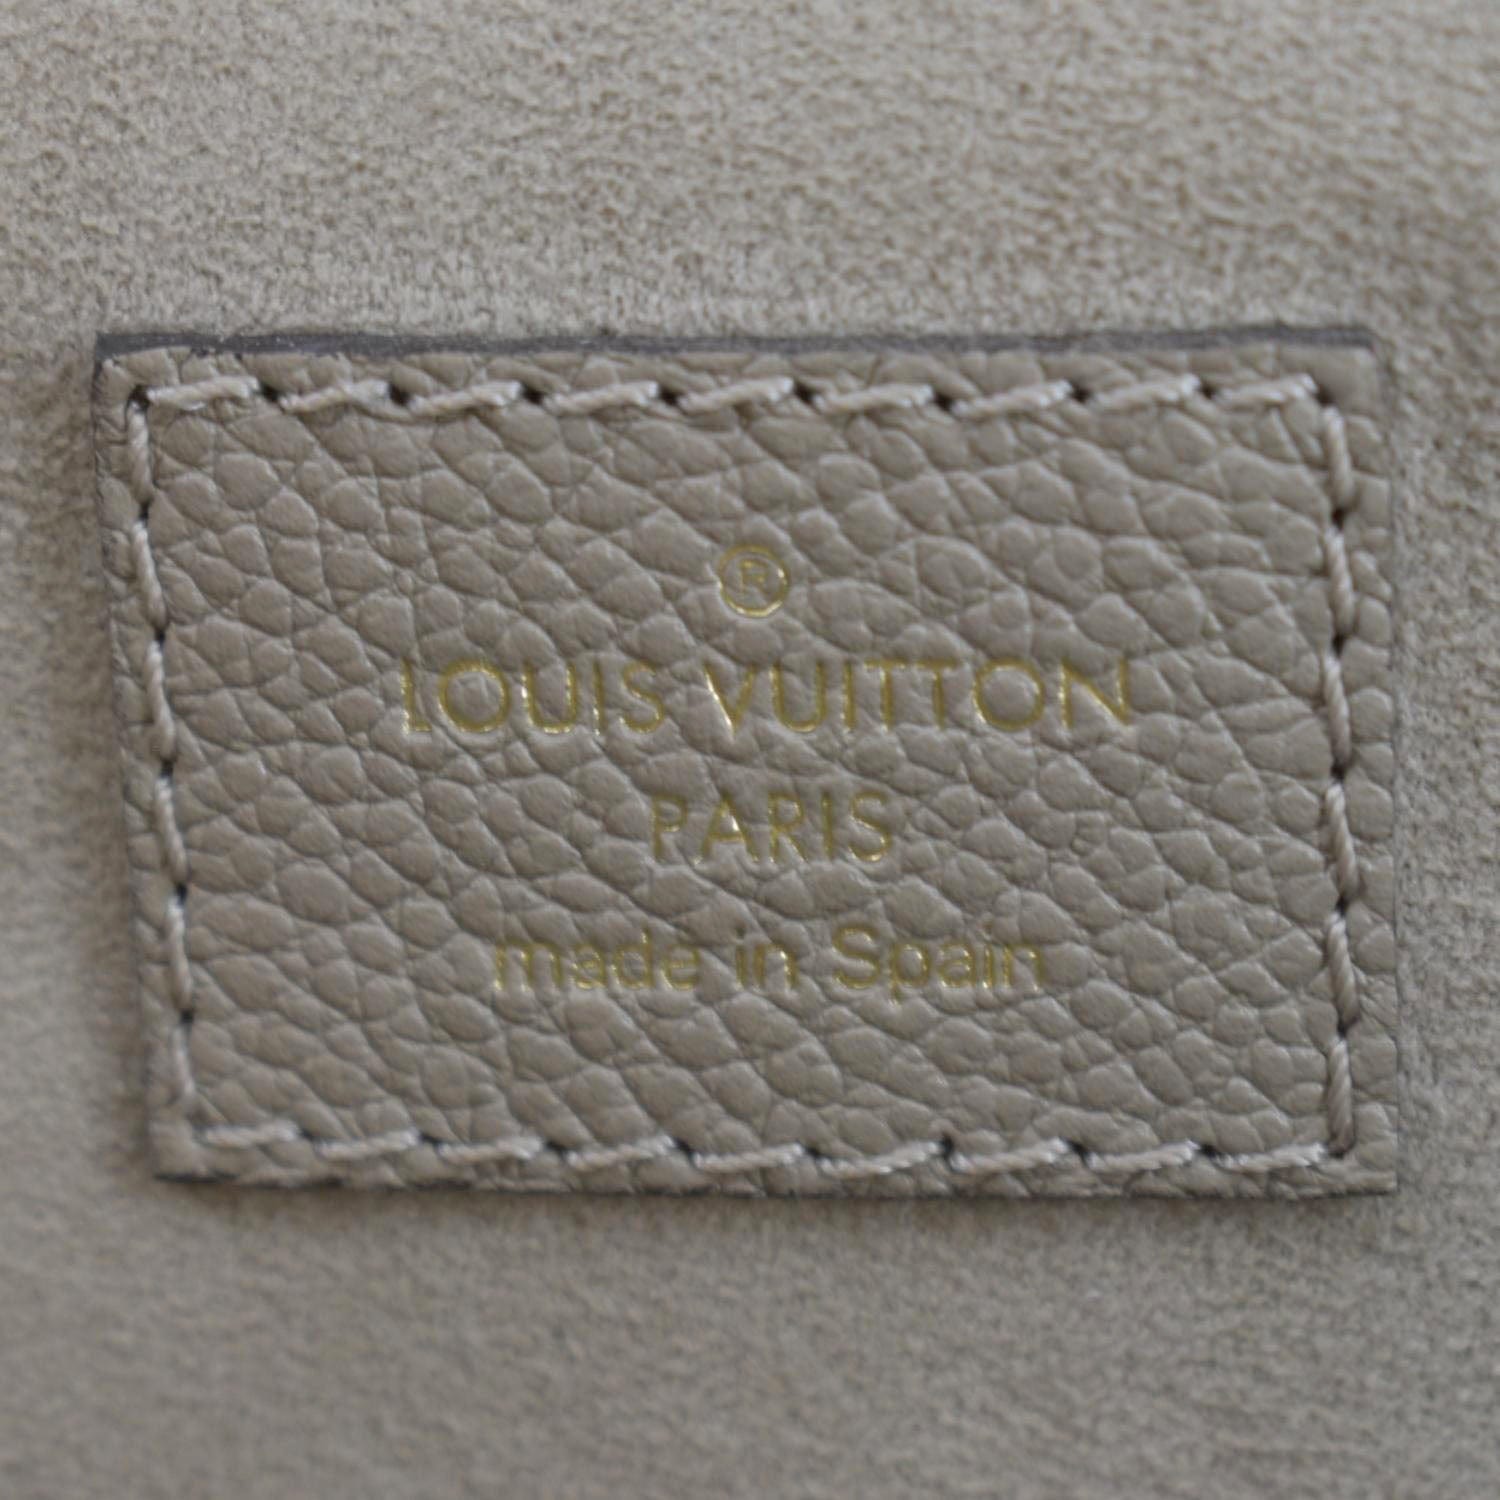 Louis Vuitton Petit Palais Crossbody Black/Beige Leather